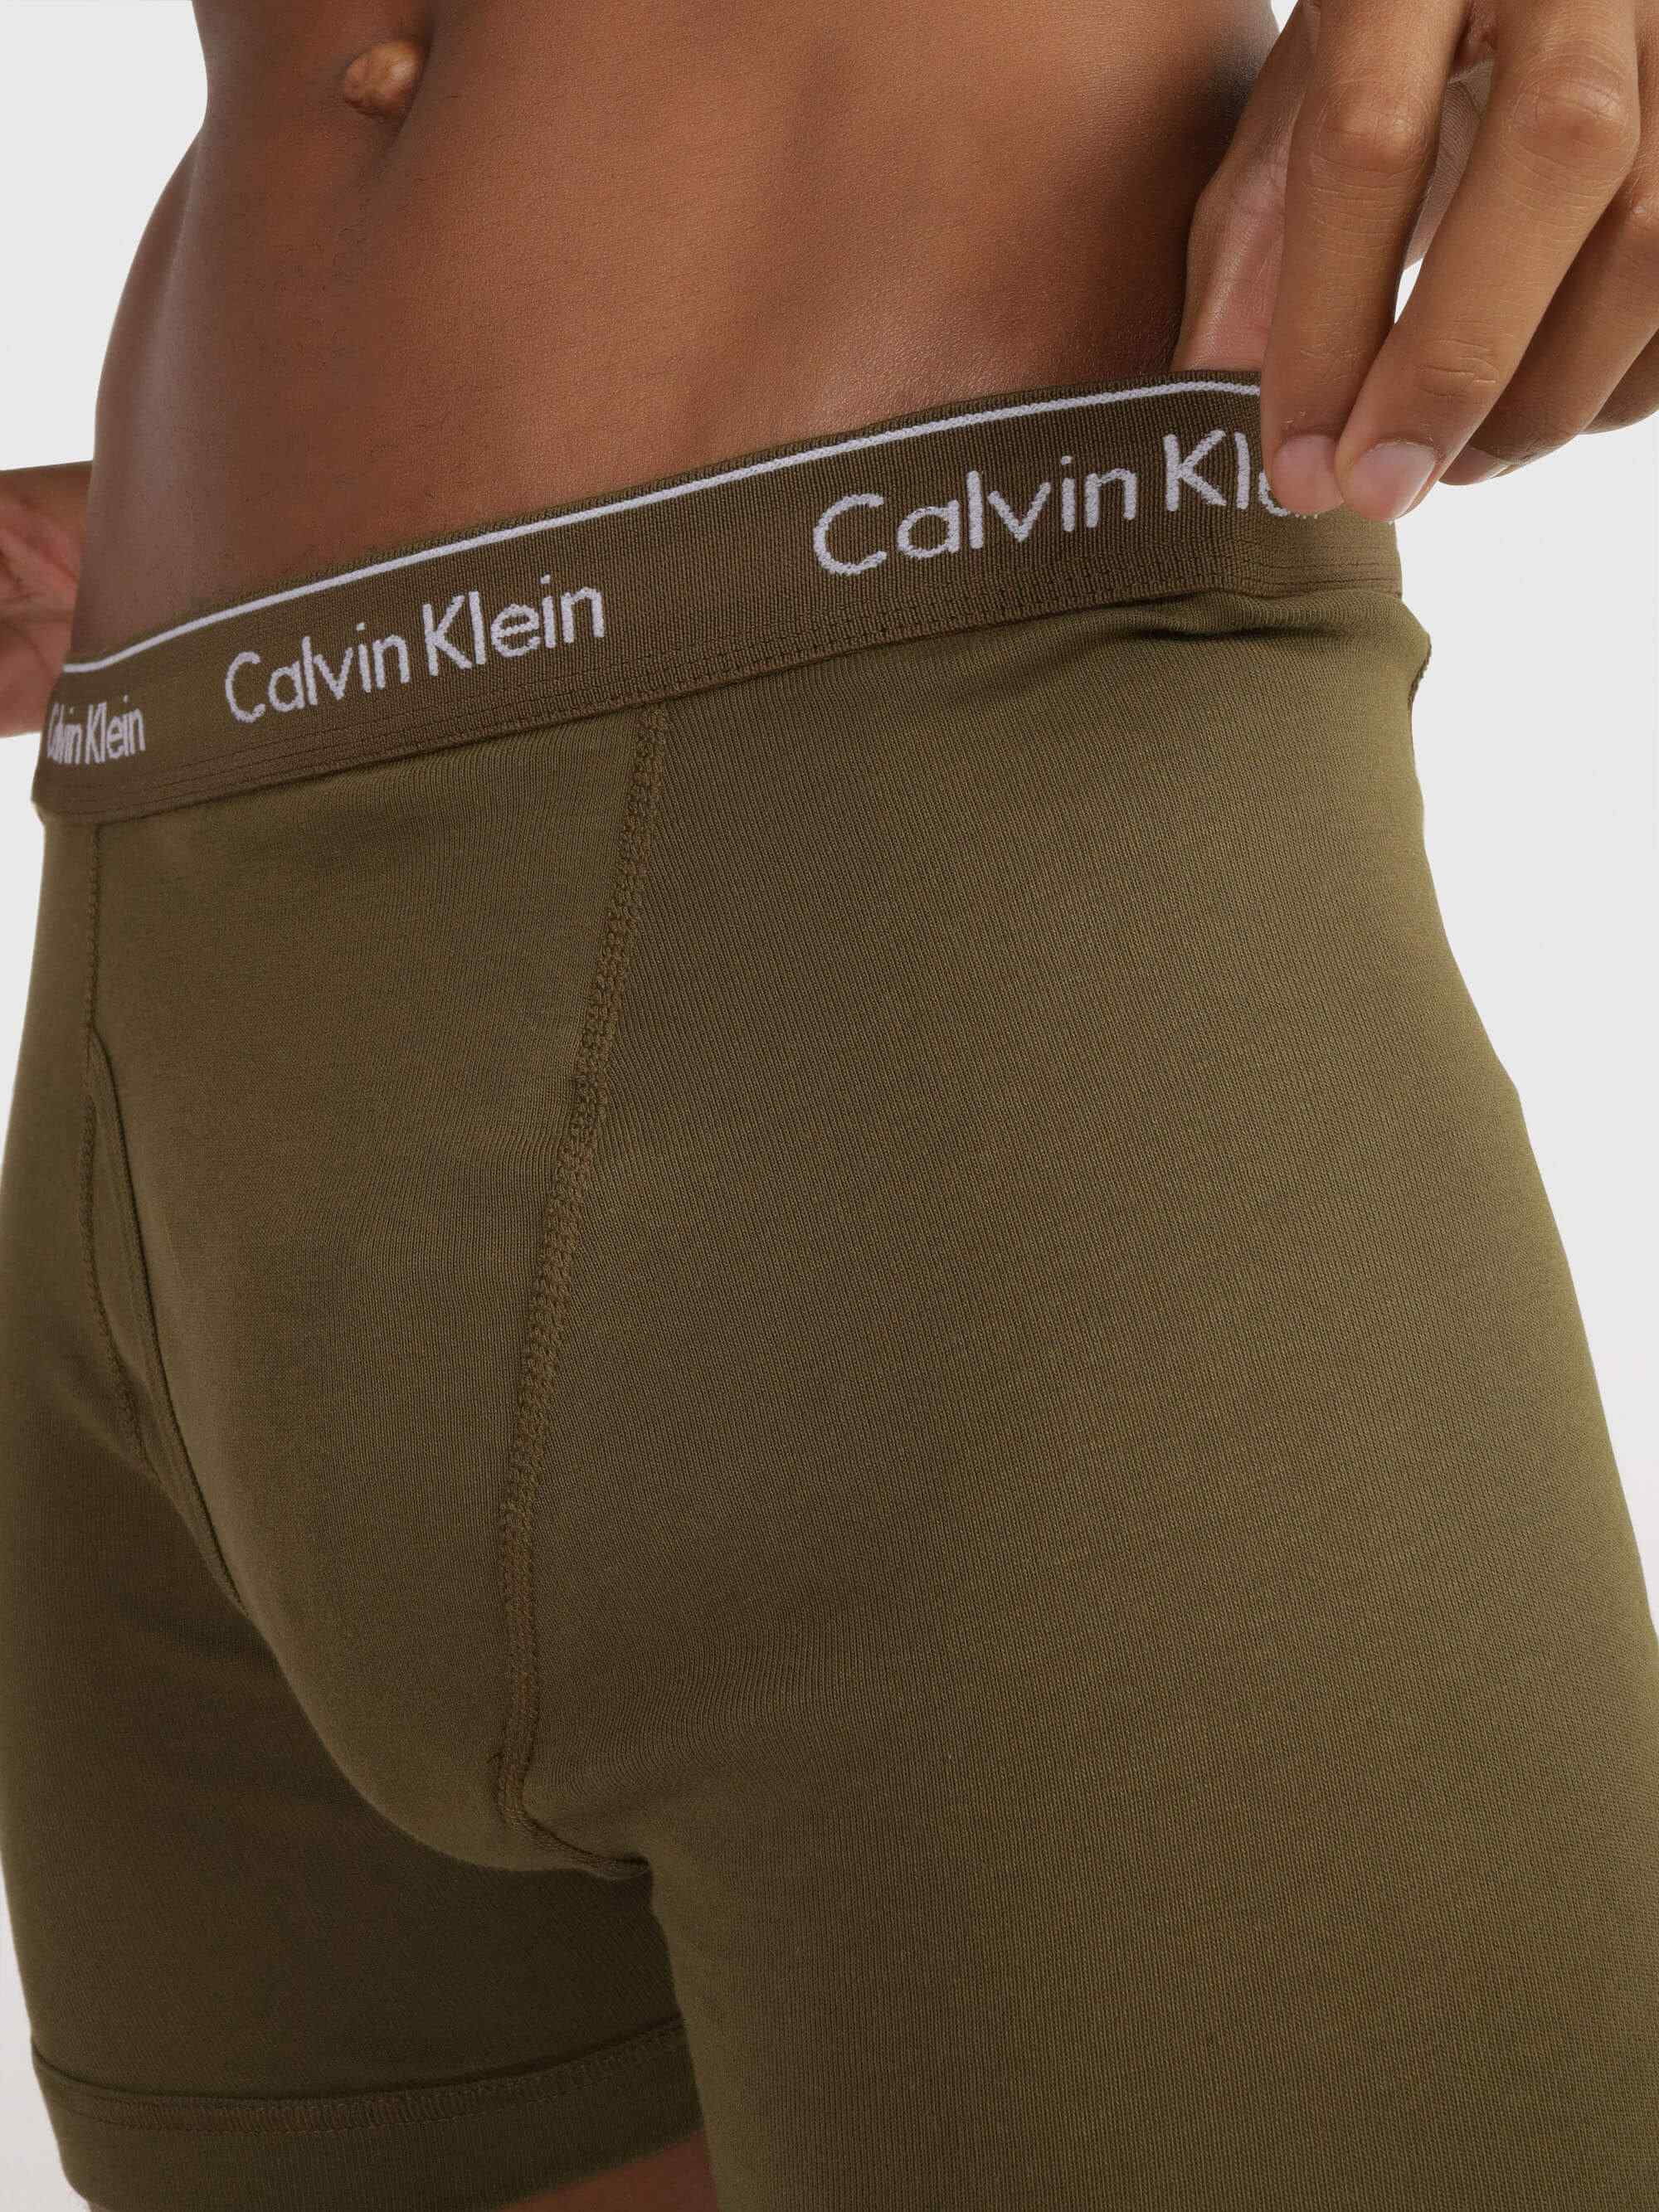 Briefs Calvin Klein Paquete de 3 Hombre Multicolor